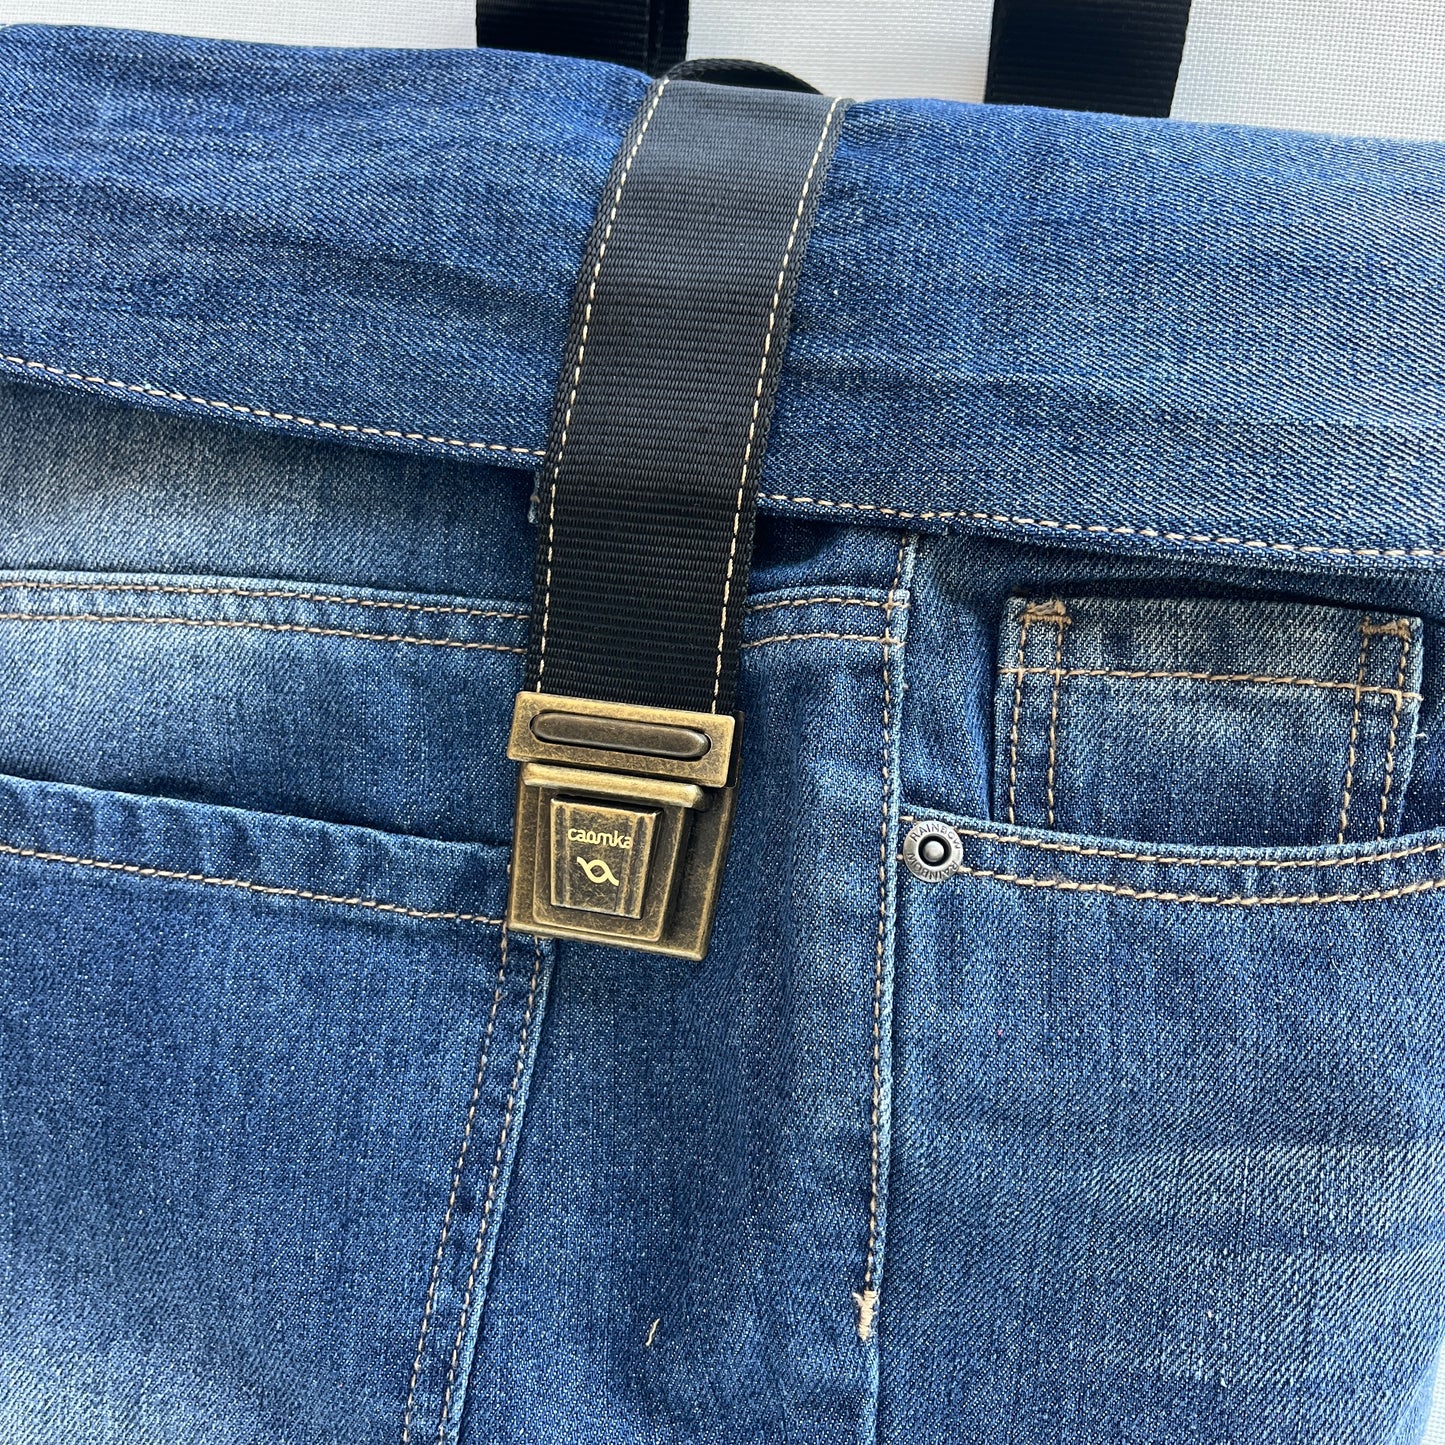 Mochila Top Caomka Recycled ♻️ Jeans · Pieza Única 15505